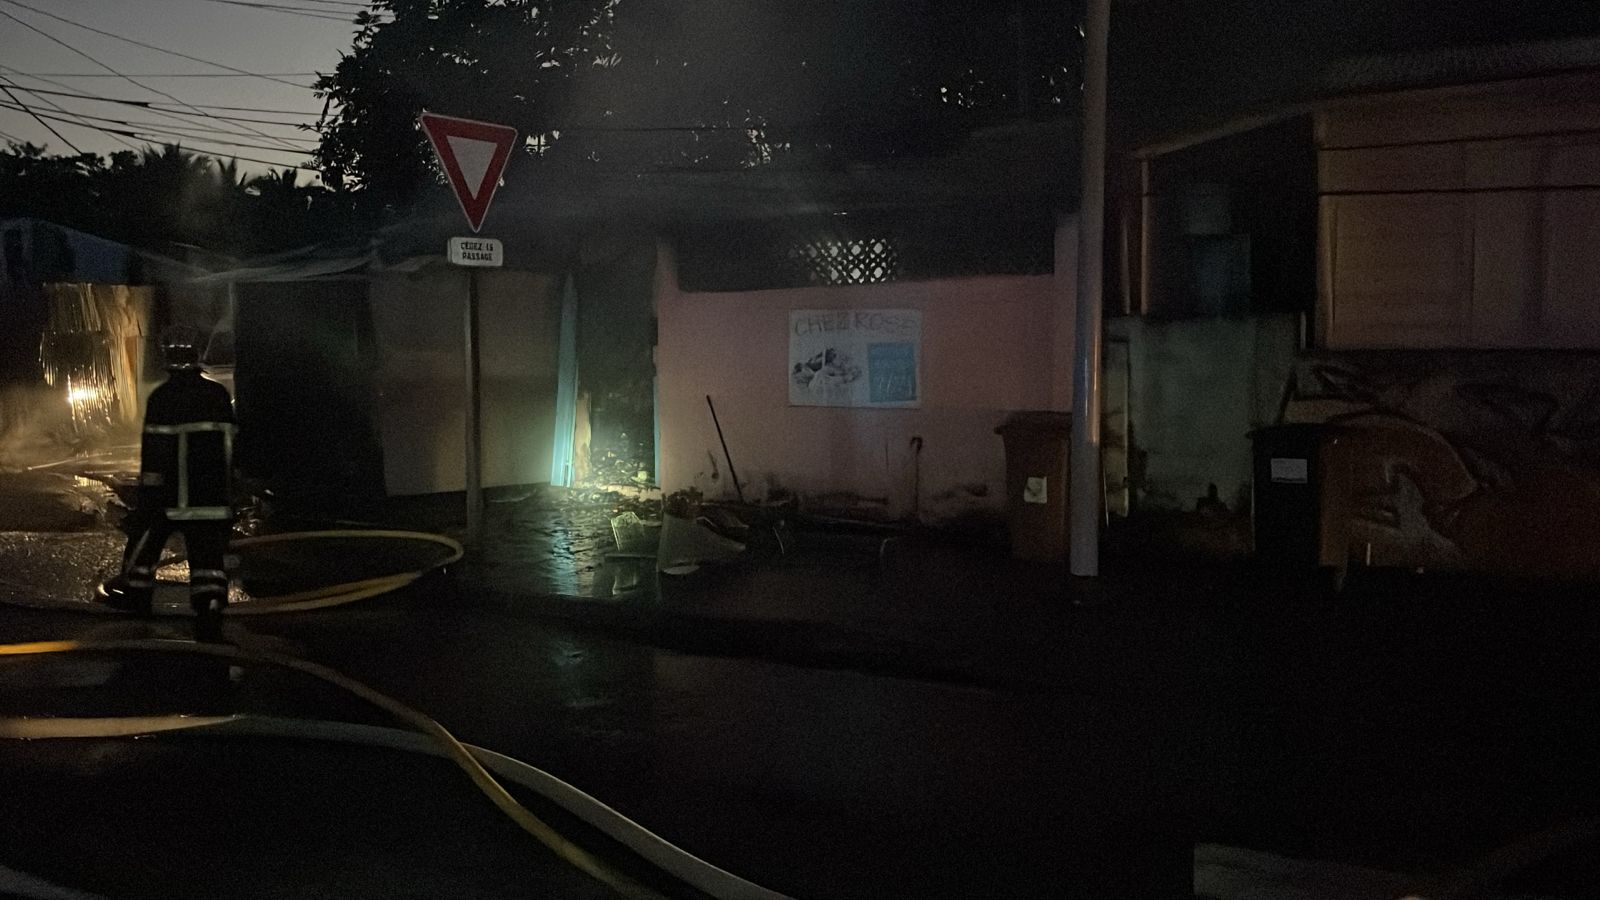     Deux véhicules et une épicerie incendiés à Pointe-à-Pitre

